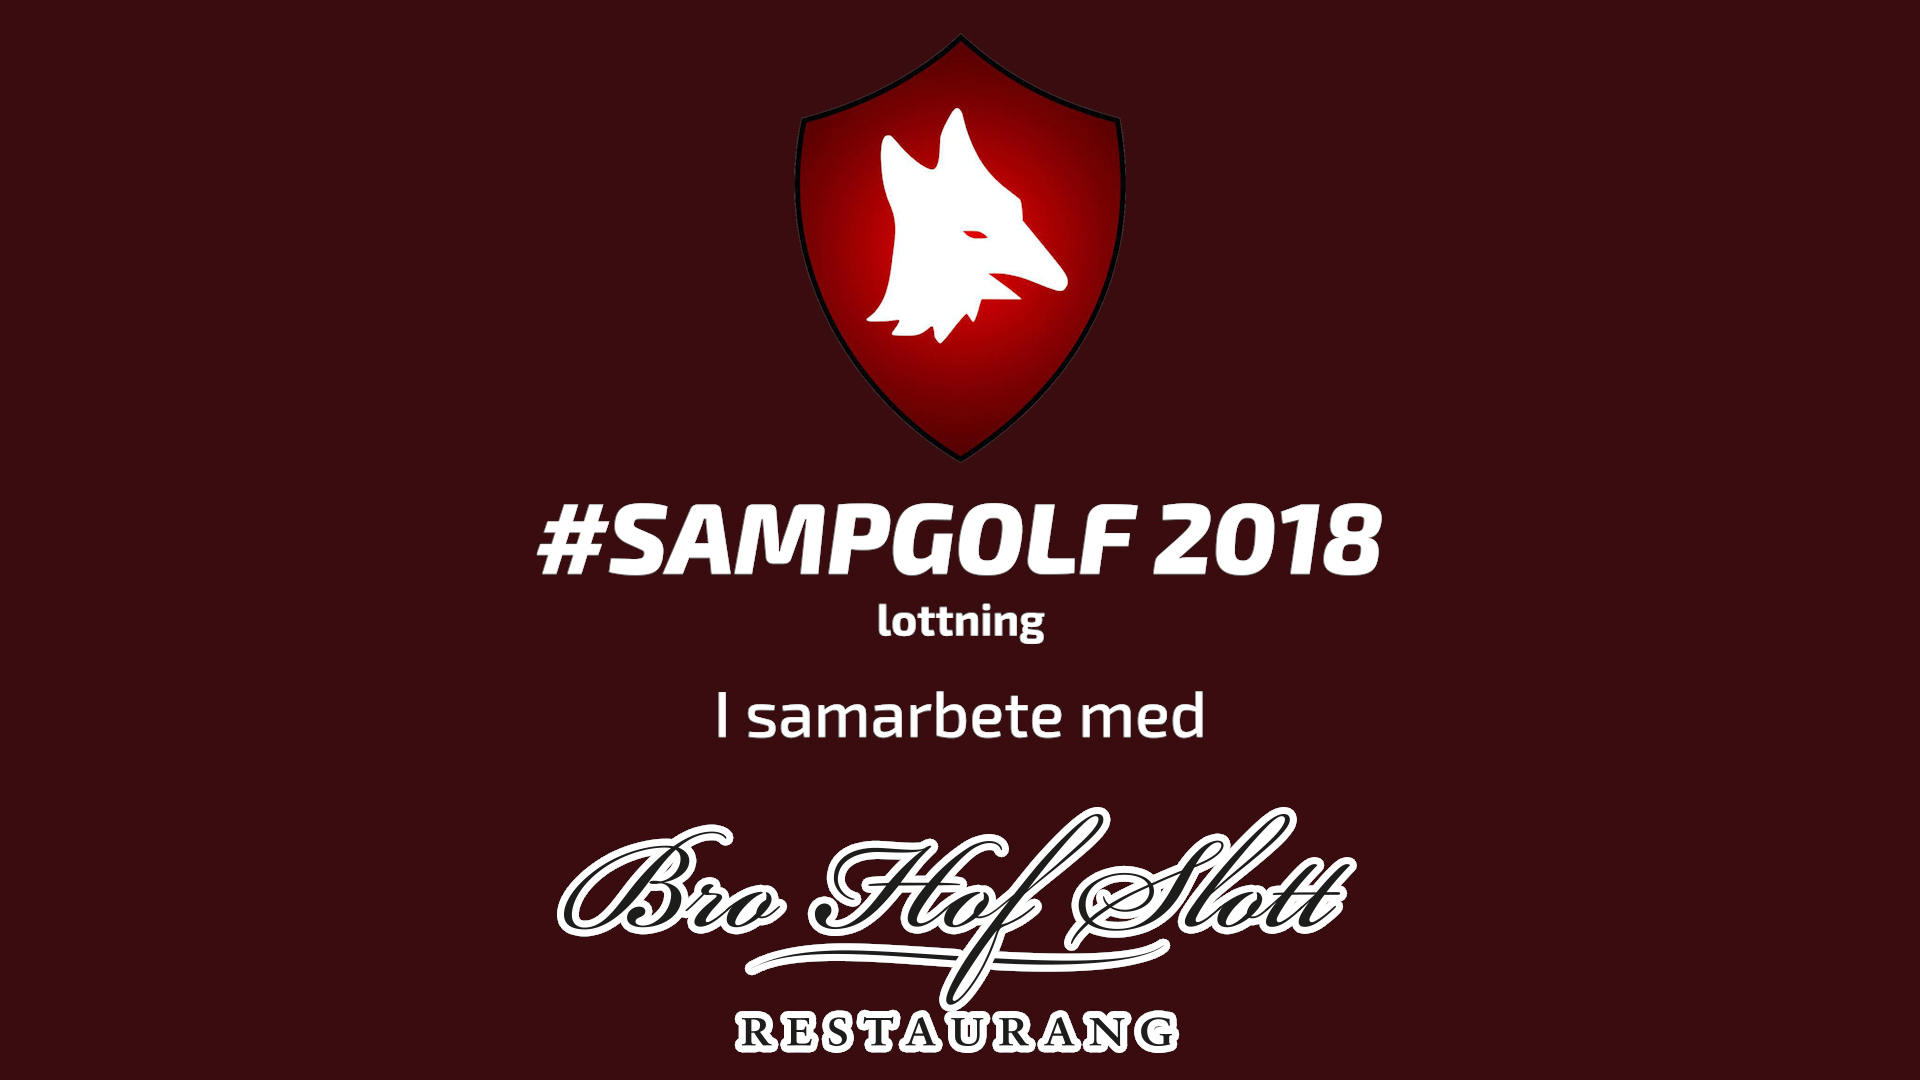 Sampgolf-lottning 2018